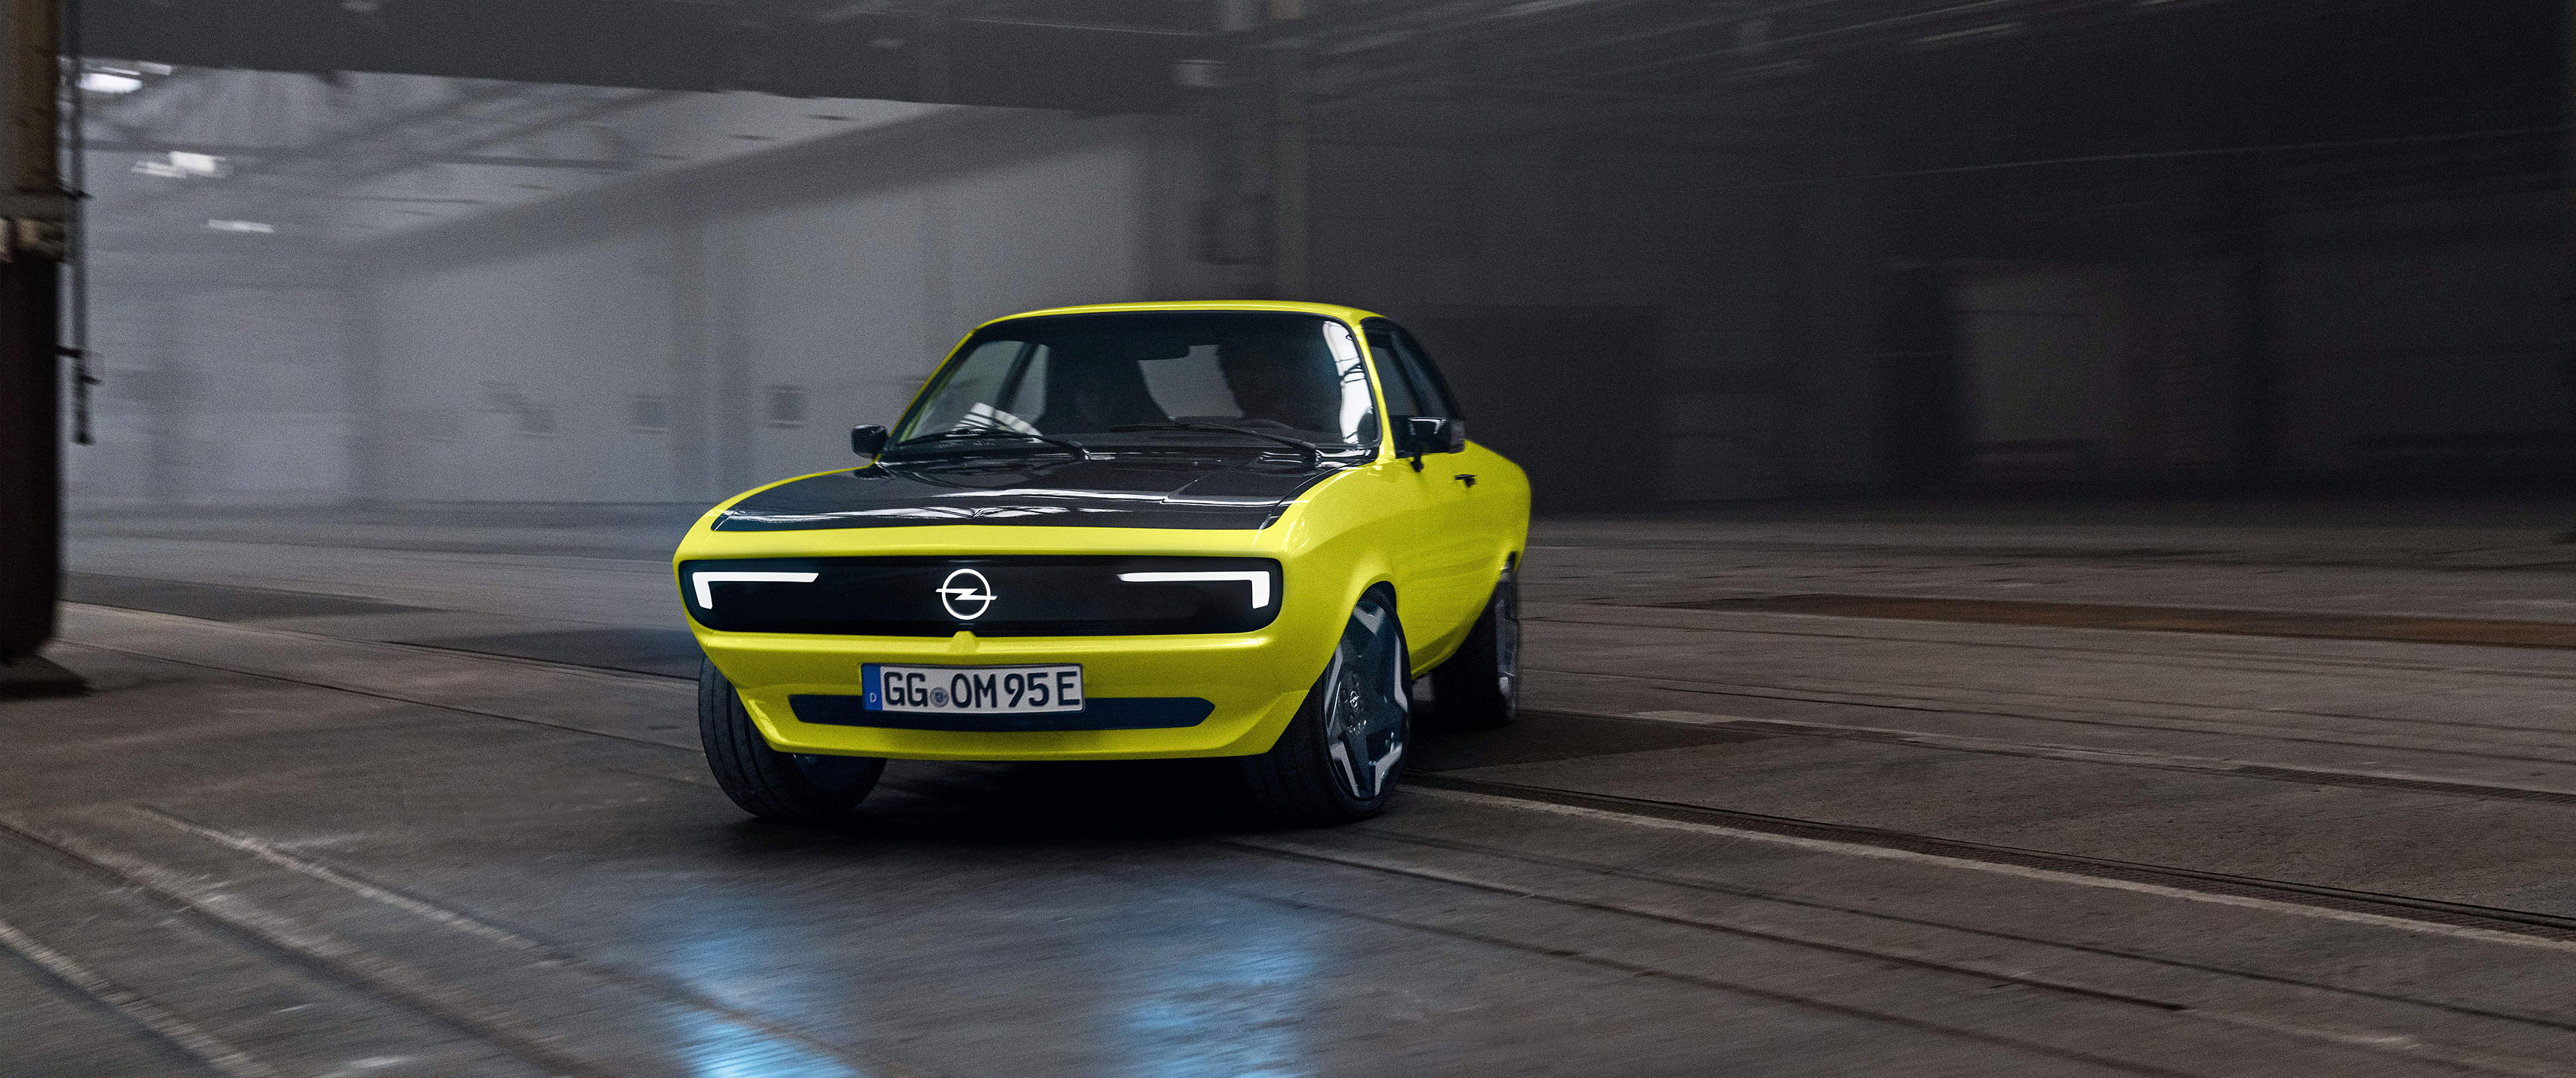  2021 Opel Manta GSe ElektroMOD  Wallpaper.